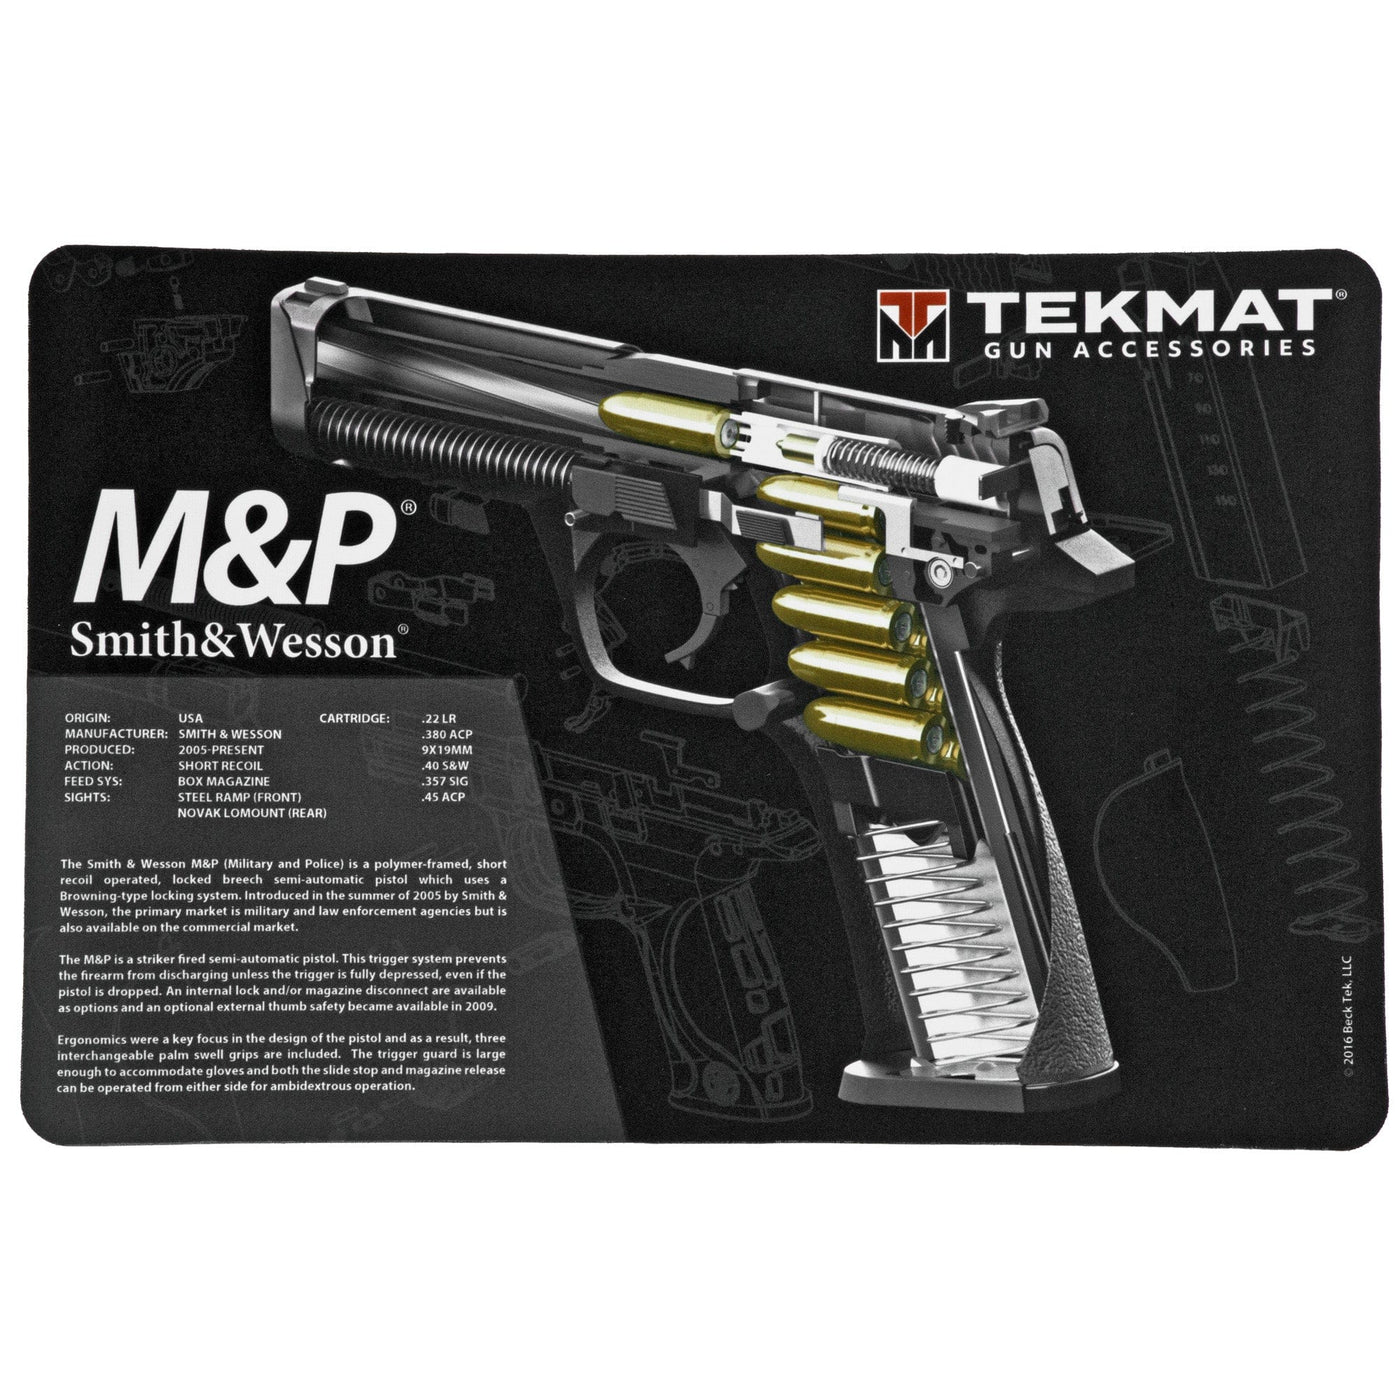 TekMat Tekmat Cutaway Pstl Mat Sw M&p Blk Cleaning Equipment